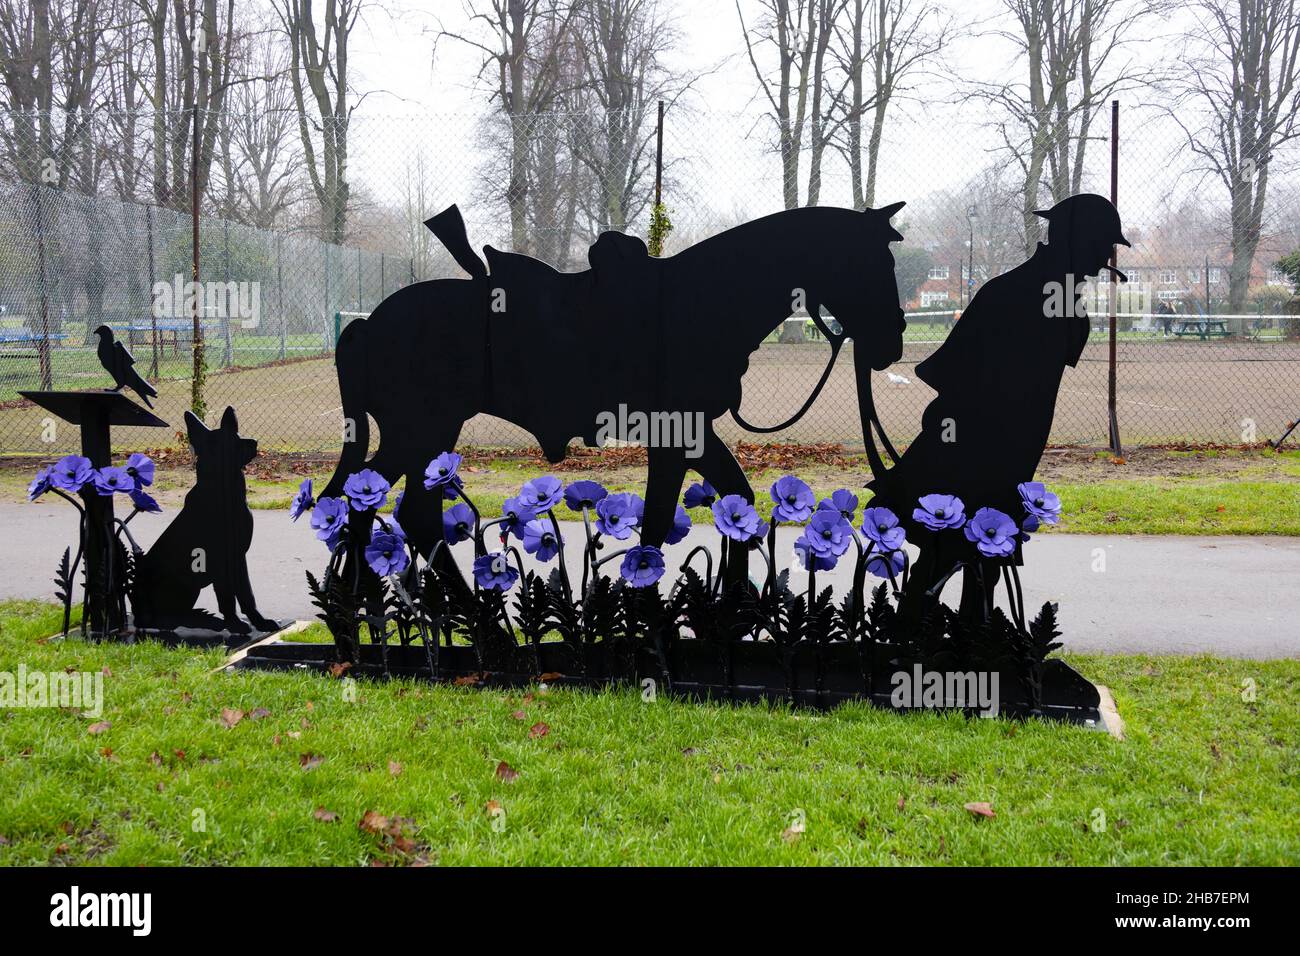 War Horse, Silhouette Memorial aux animaux tués dans le service de guerre.Coquelicots violets.Wyndham Park, Grantham, Lincolnshire, Angleterre. Banque D'Images